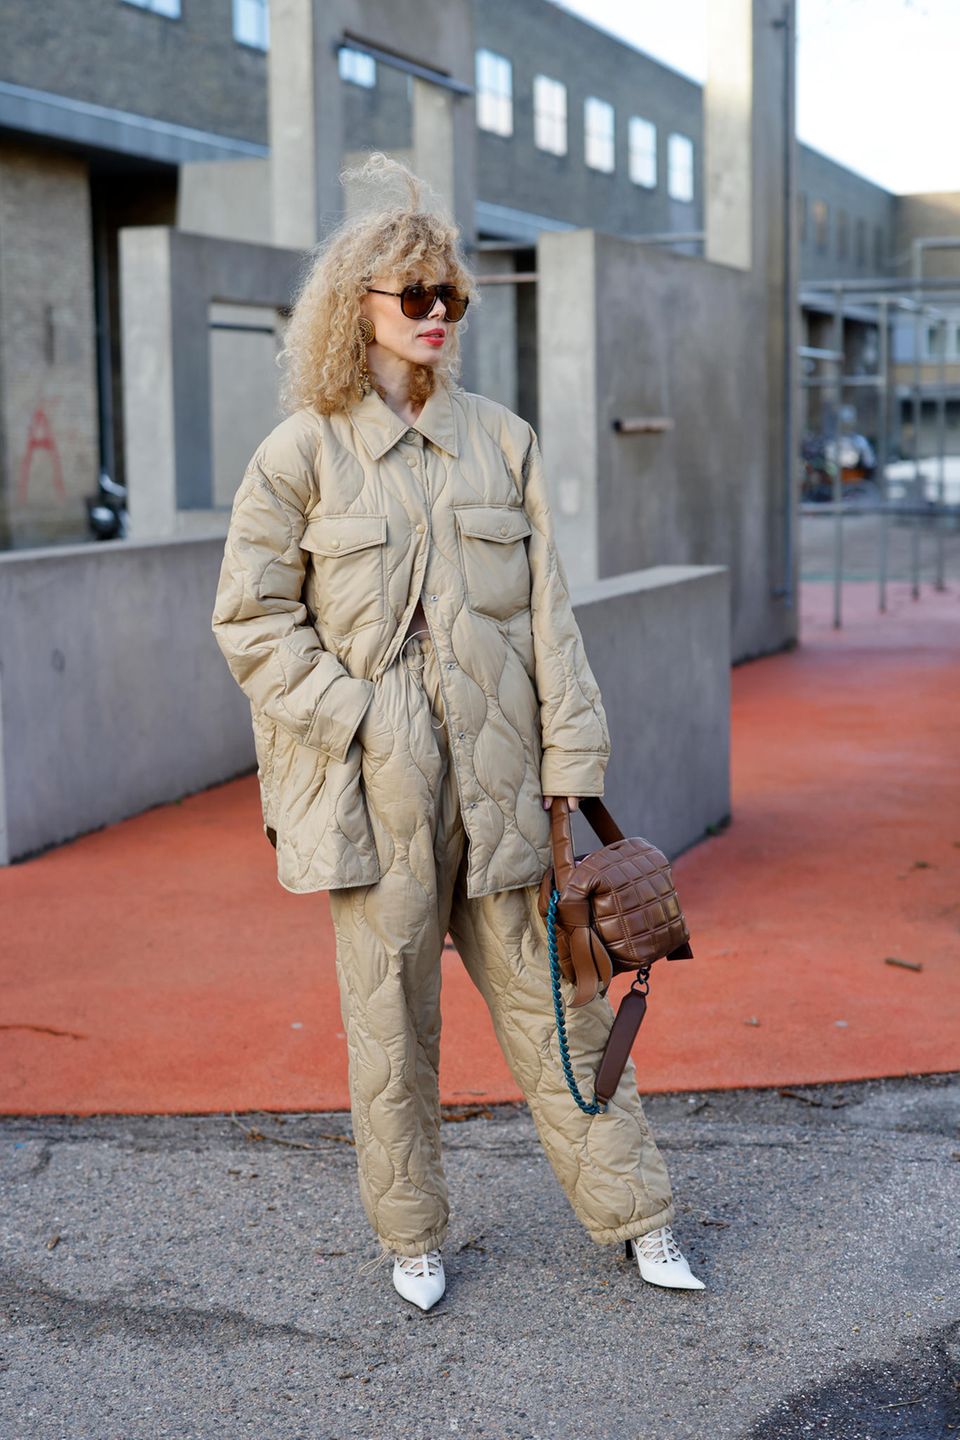 Stepp tragen wir längst nicht mehr nur bei Jacken, auch gequiltete Hosen liegen jetzt richtig im Trend. Künstlerin Maya Wik profitiert von ihrem stylischen Outfit in Kopenhagen, denn es hält auch noch warm. 